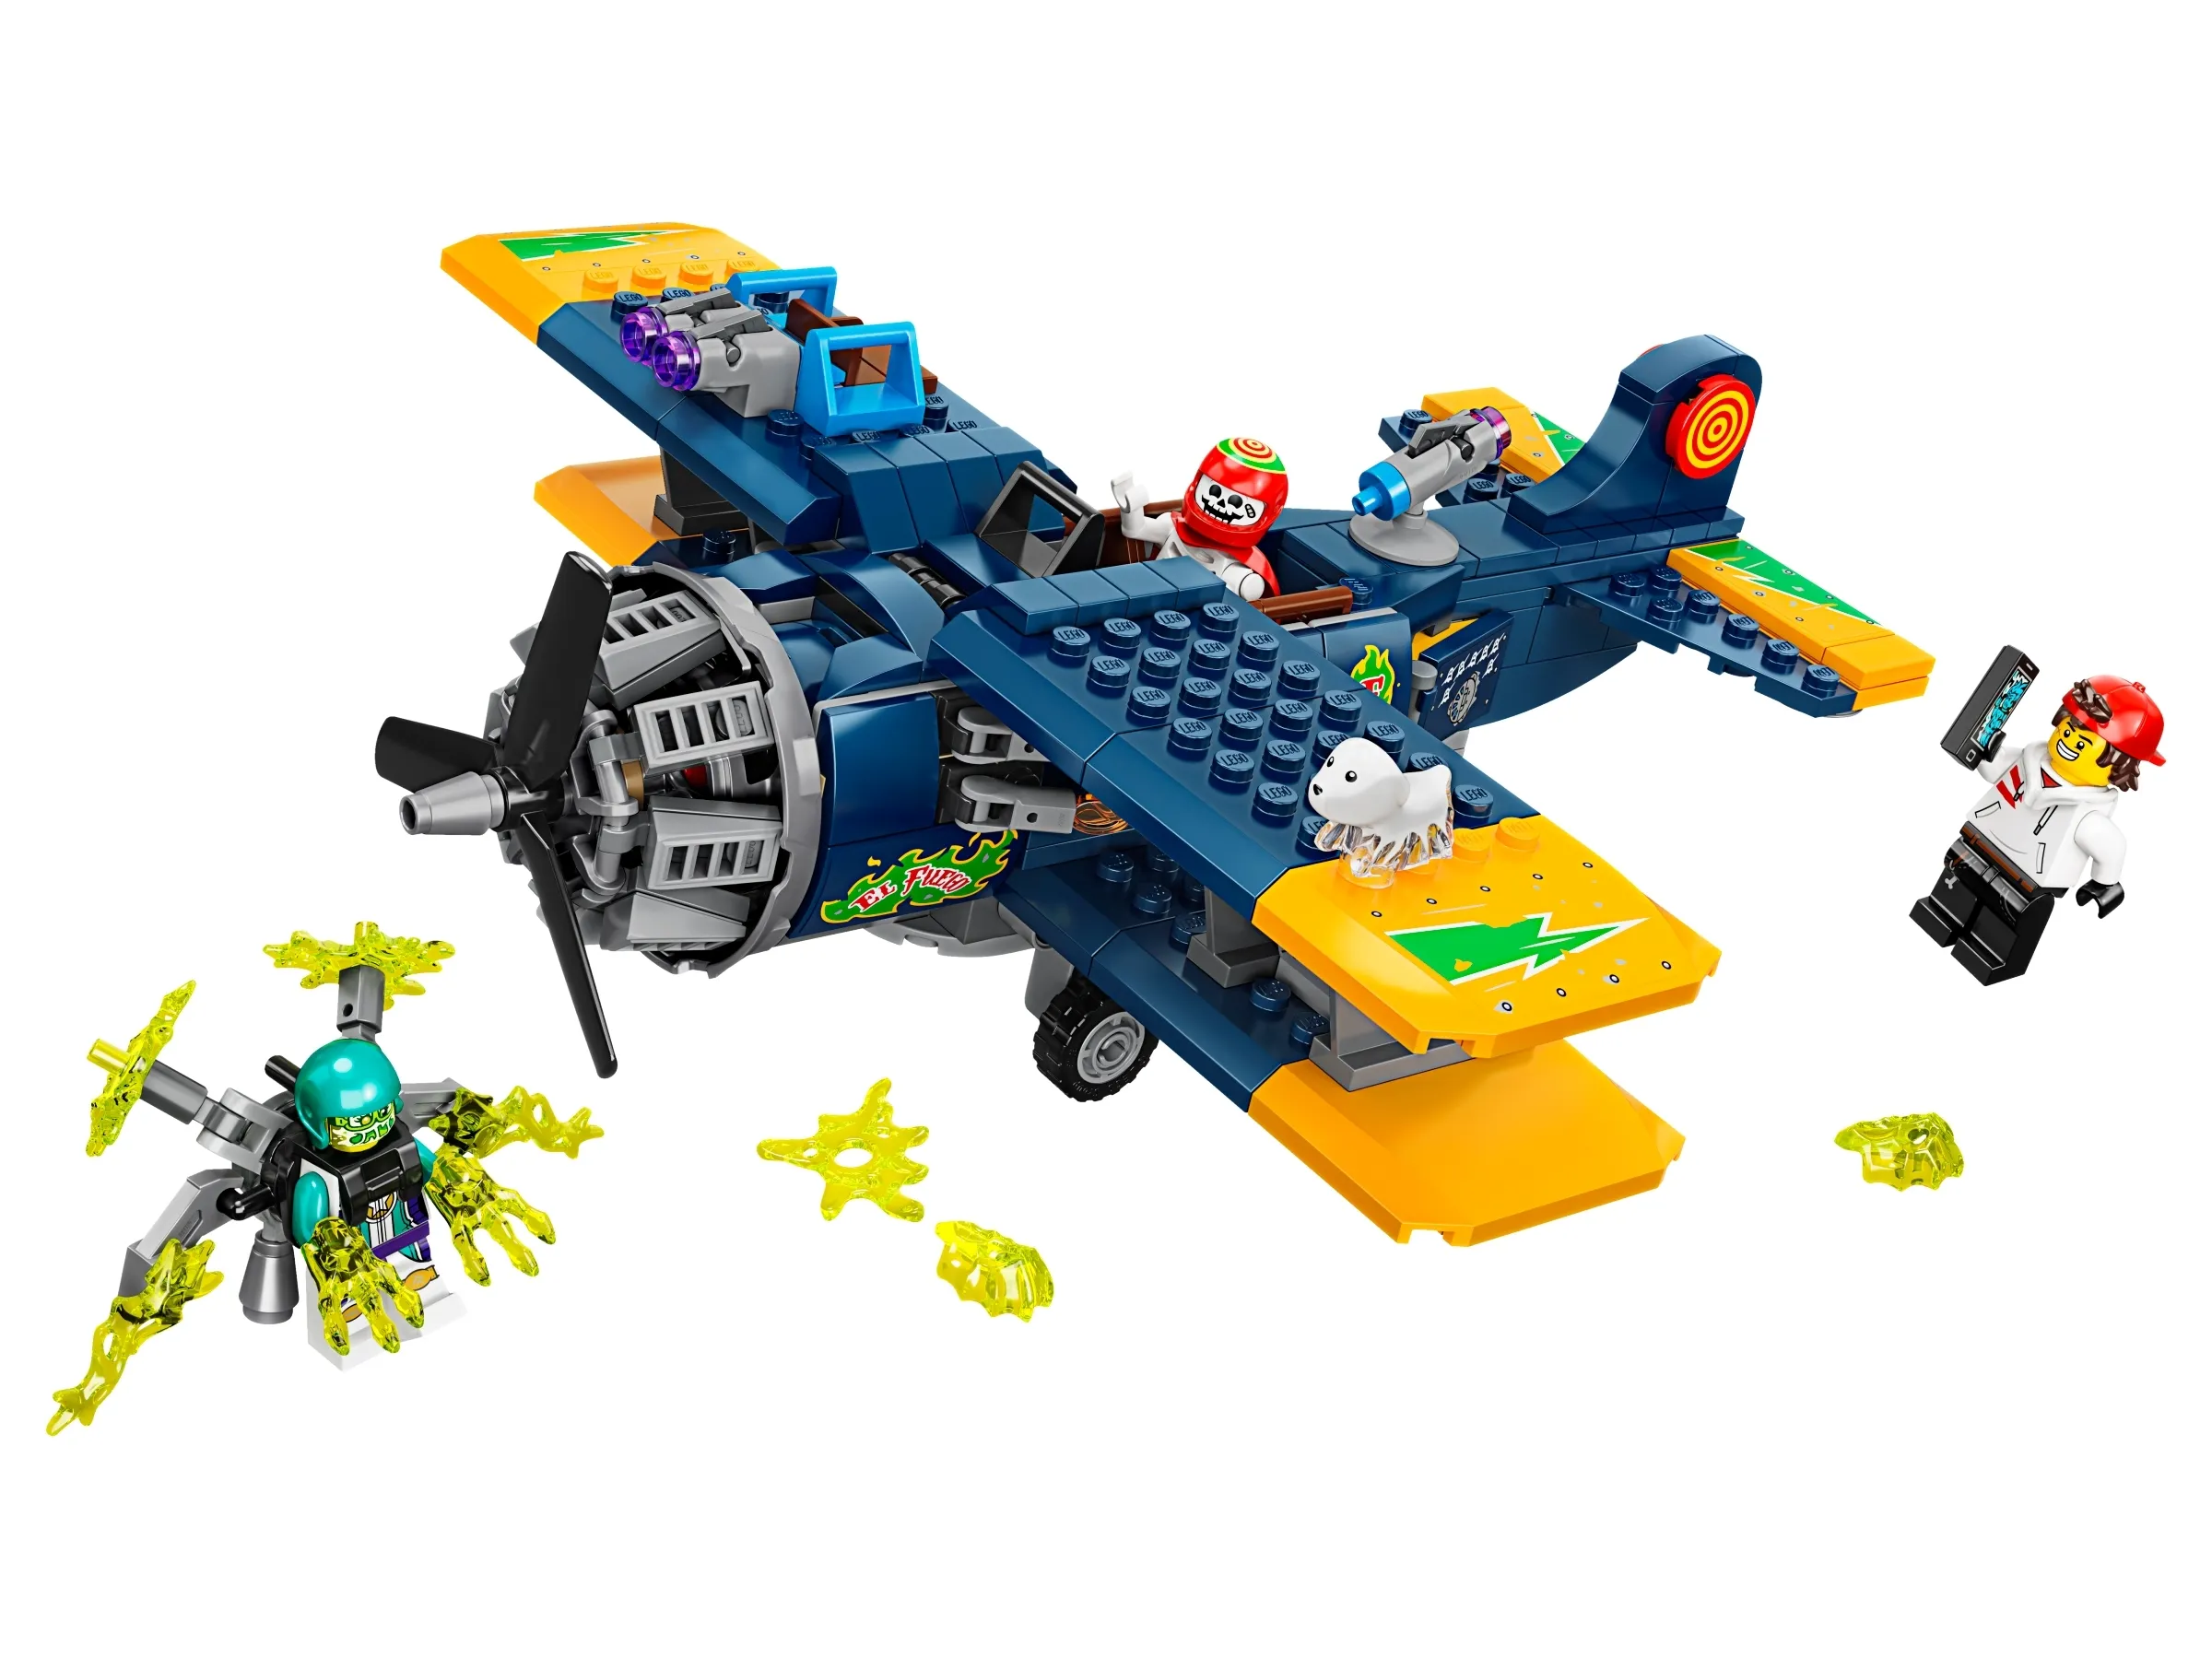 LEGO Hidden Side El Fuego's Stunt Plane • Set 70429